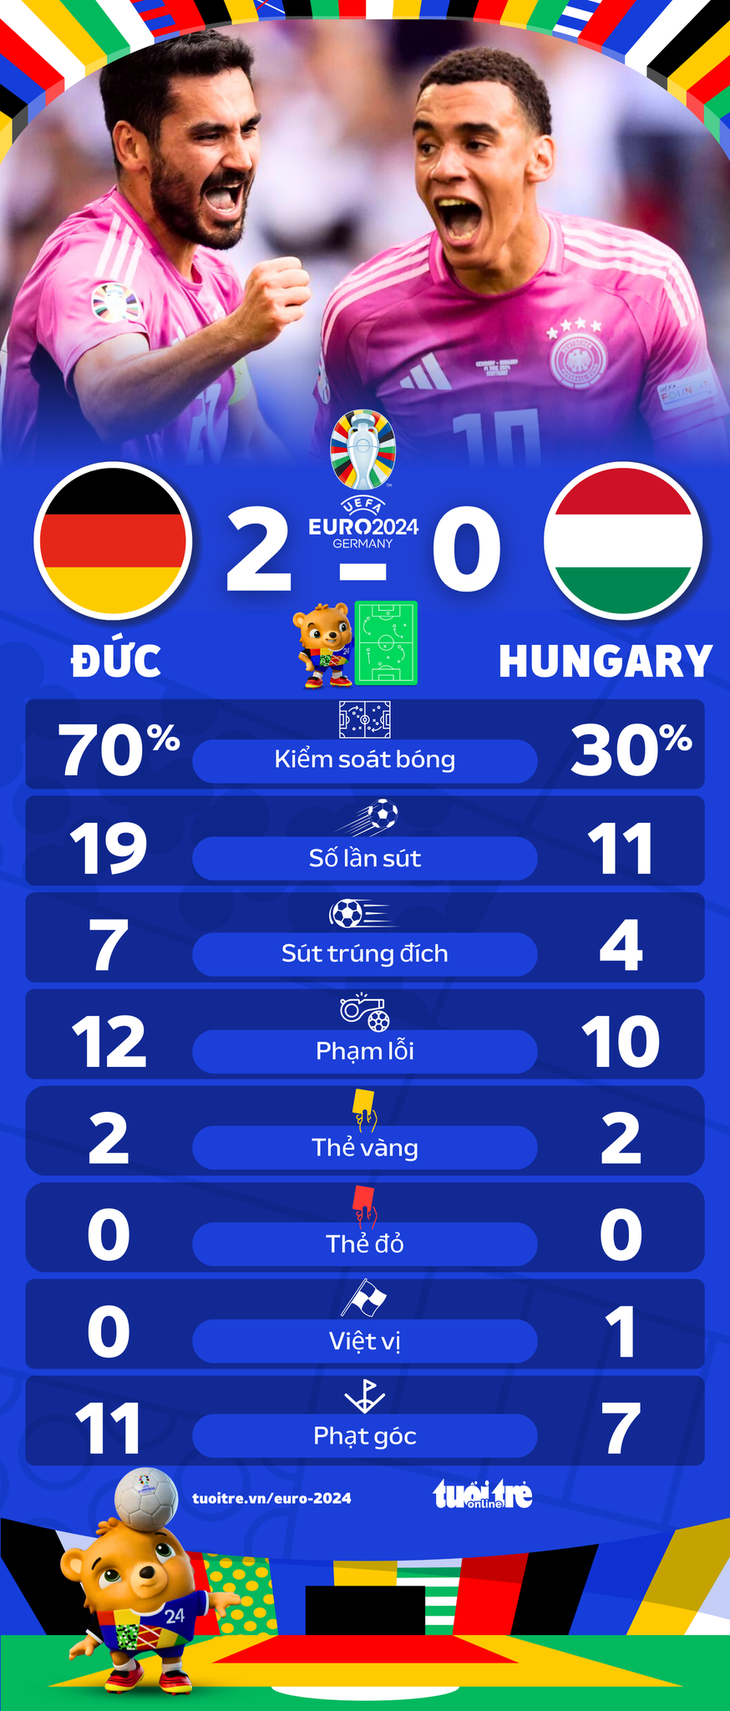 Thống kê sau trận Đức thắng Hungary 2-0 - Đồ họa: AN BÌNH